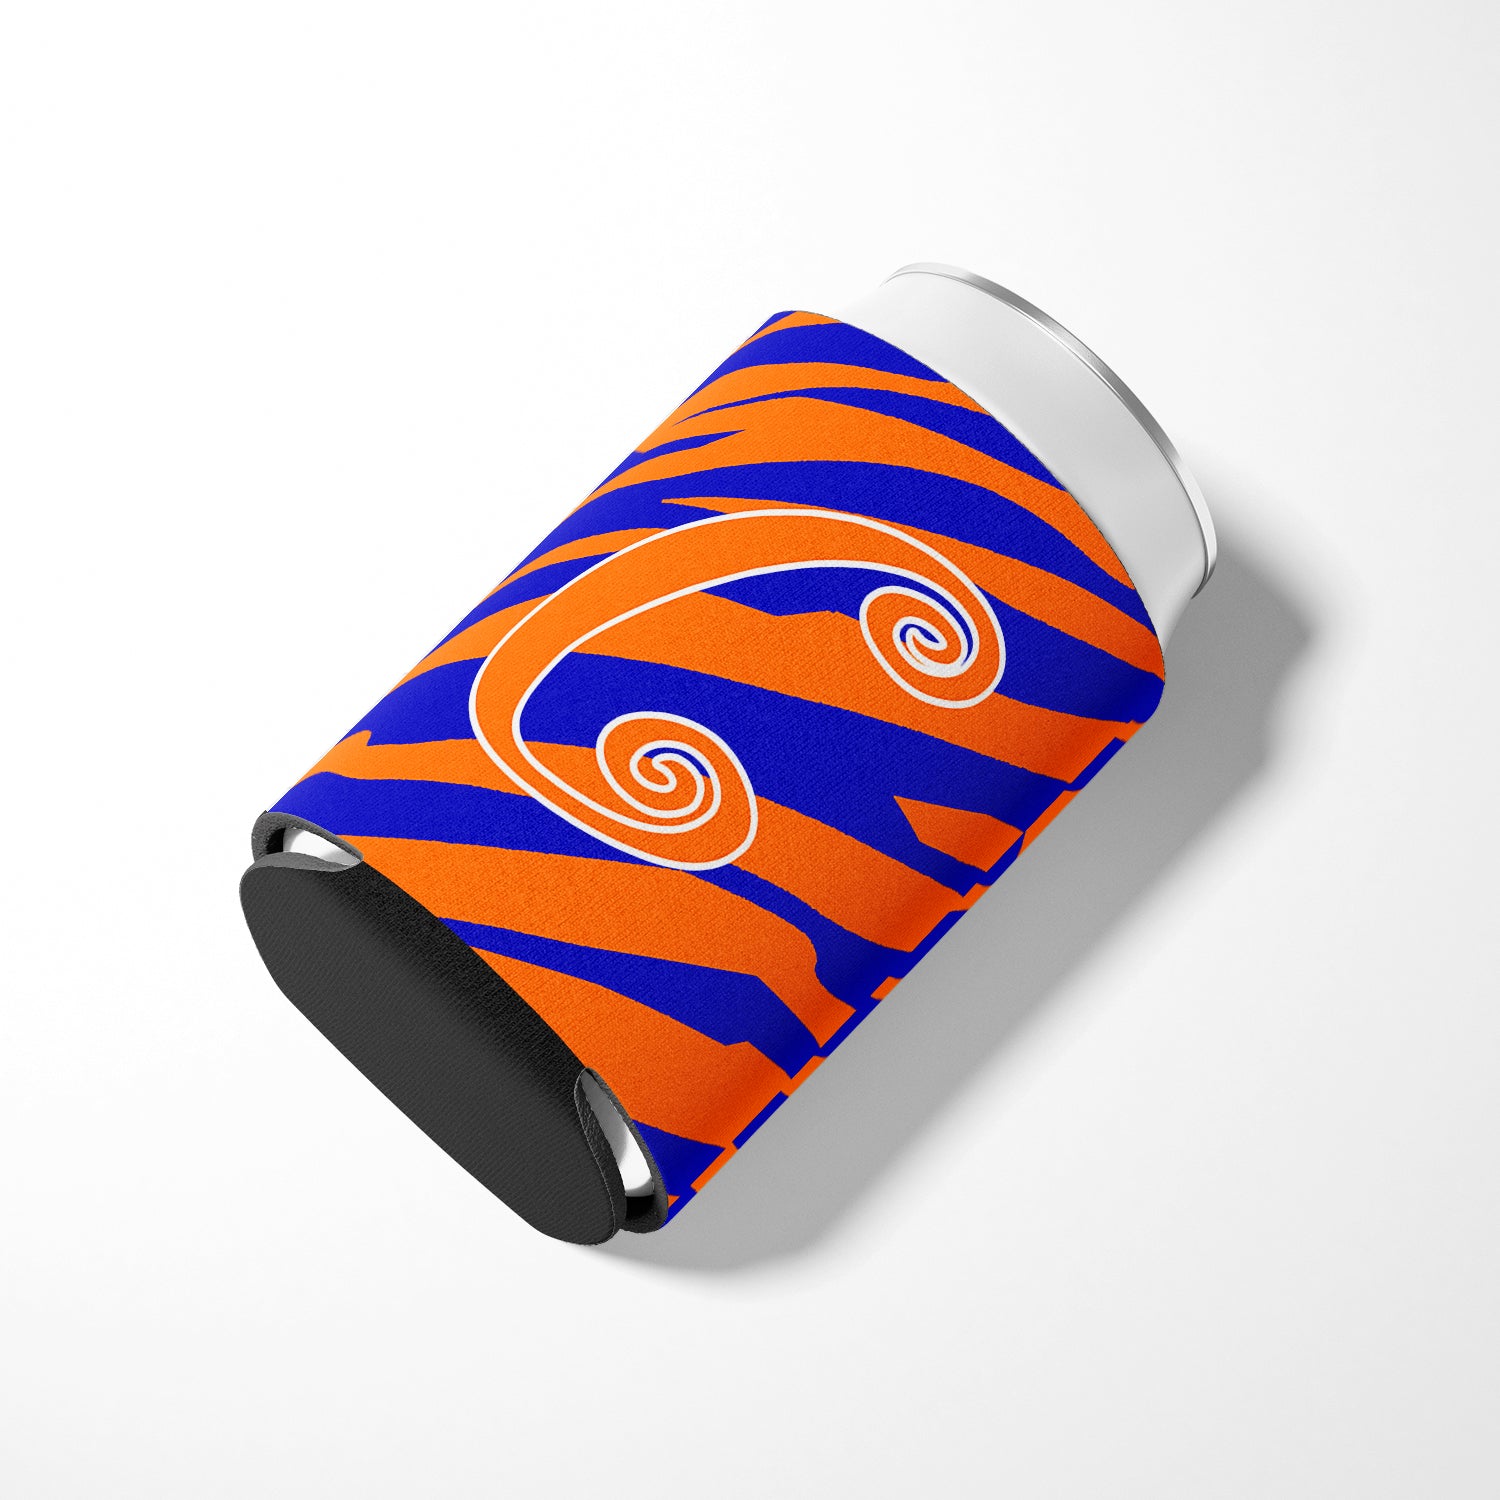 Letter C Initial Monogram - Tiger Stripe Blue and Orange Can Beverage Insulator Hugger.